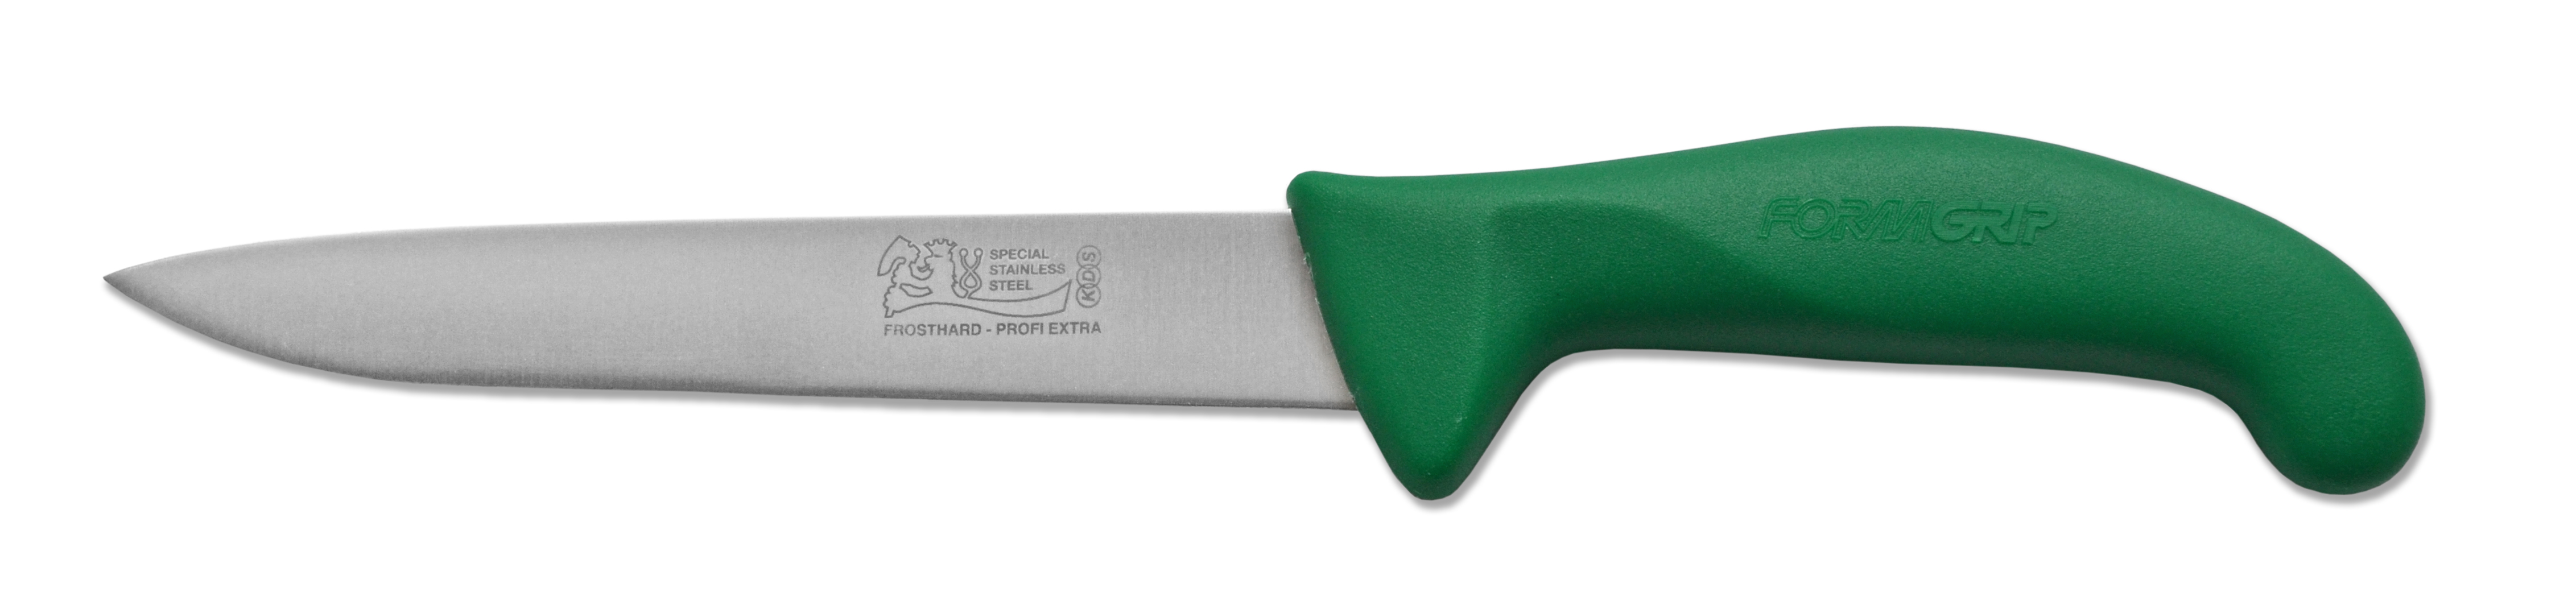 Nůž řeznický středošpičatý 7 - Frosthard